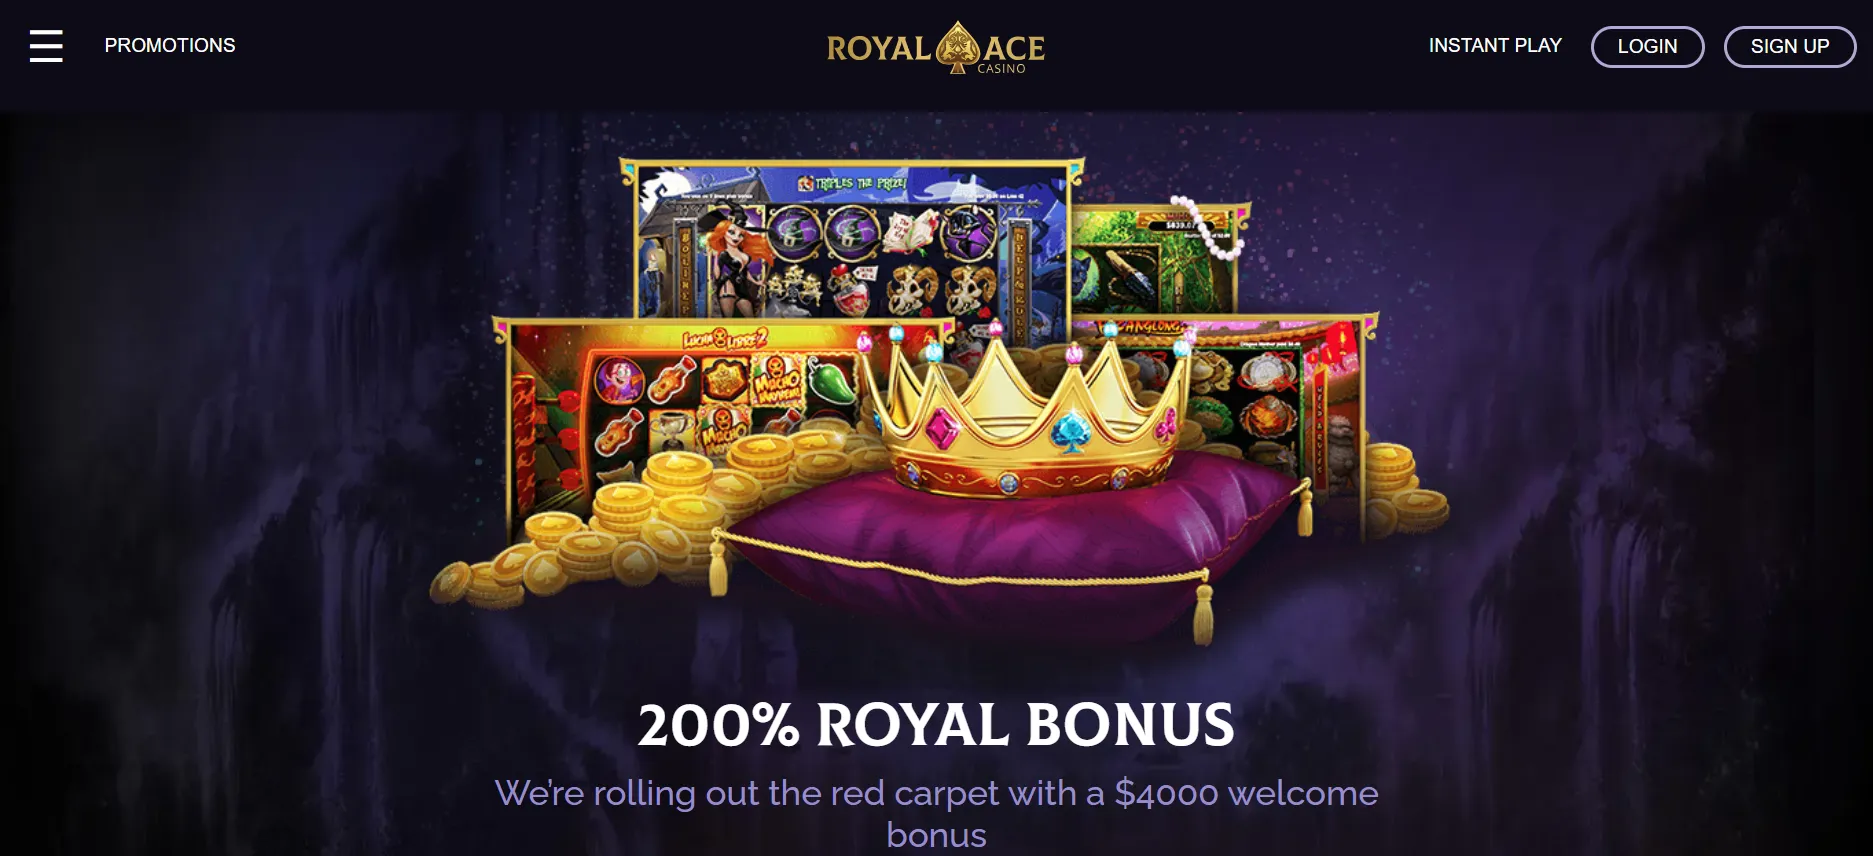 promociones royal ace casino